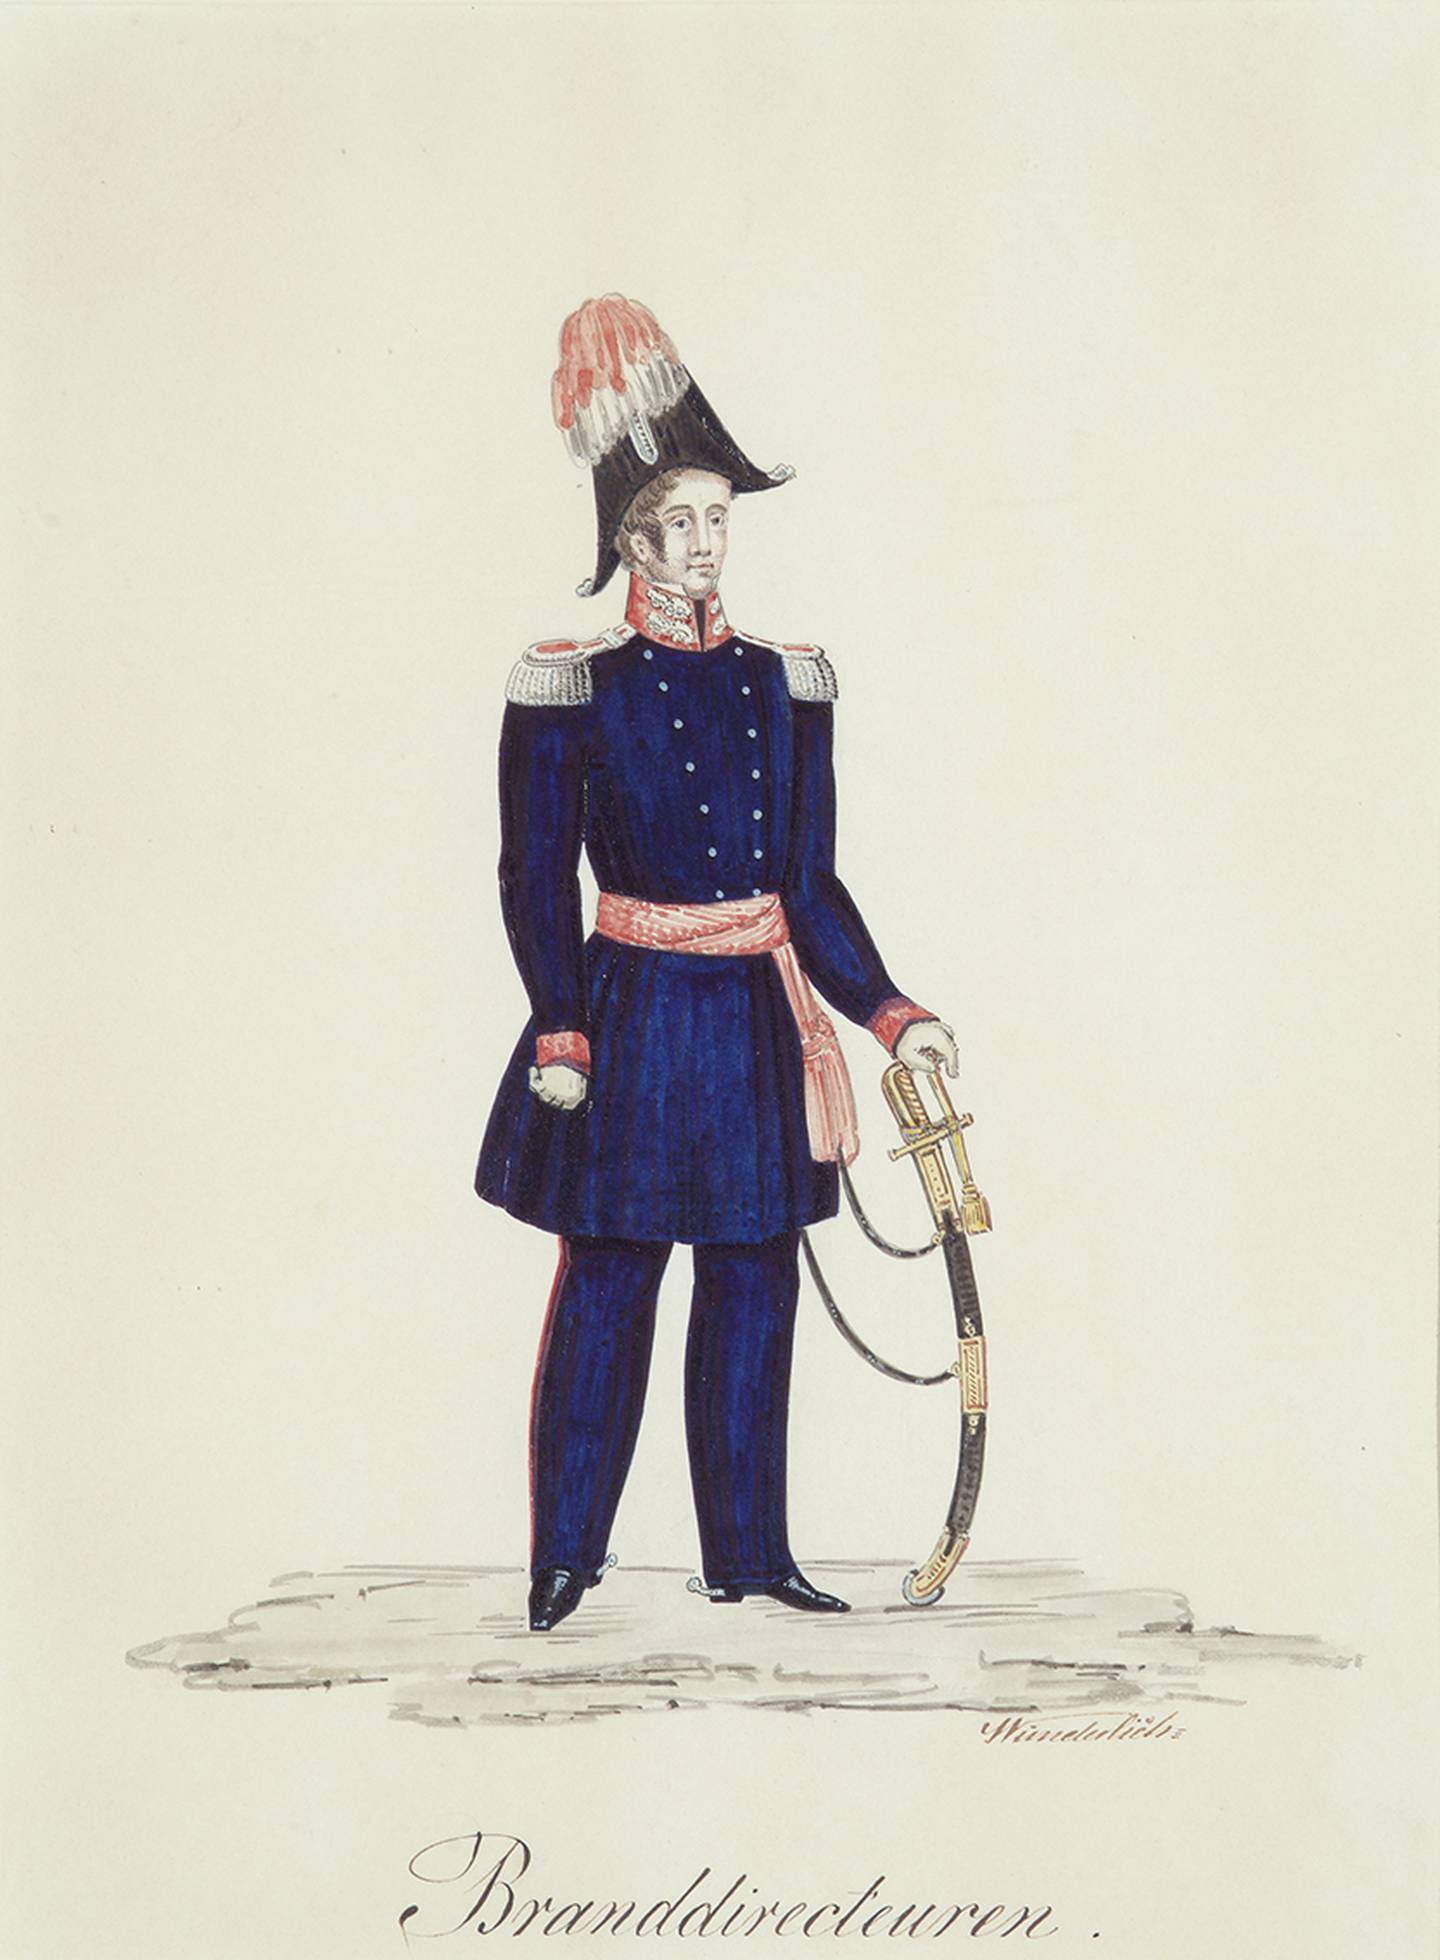 Fram til 1861 var brannvesenet organisert som et frivillig borgerbrannkorps. Utkast til Branndirektørens uniform. Akvarell av Wunderlich.